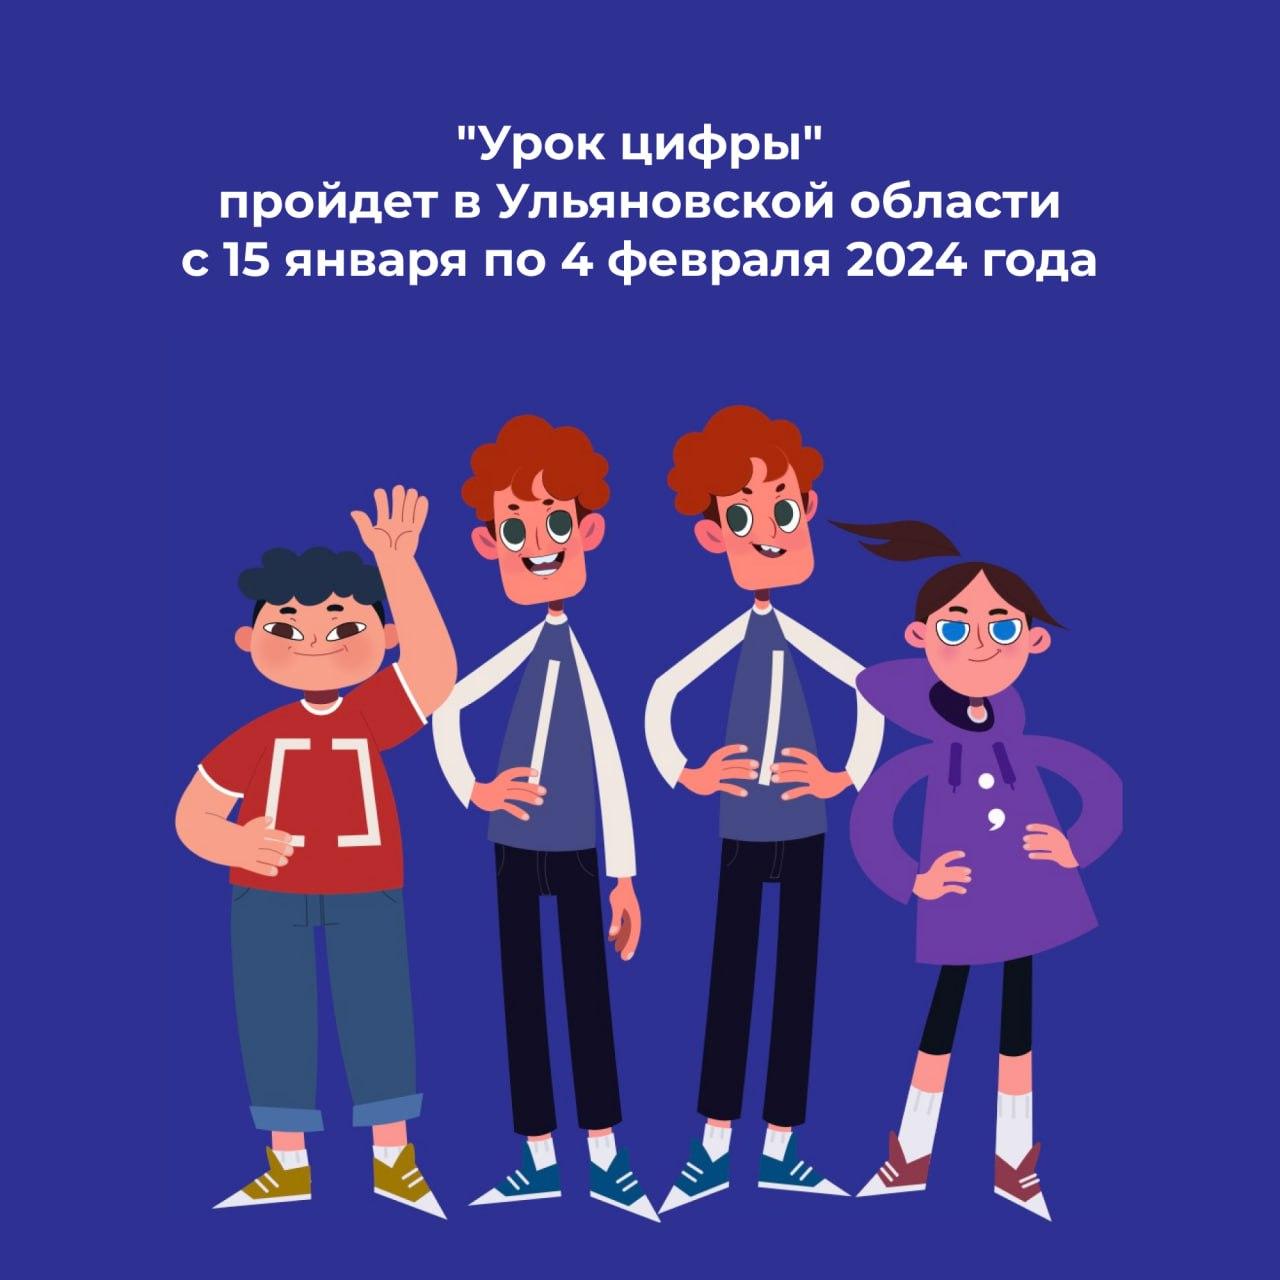 В Ульяновской области пройдет первый в 2024 году этап Всероссийского образовательного проекта «Урок цифры».